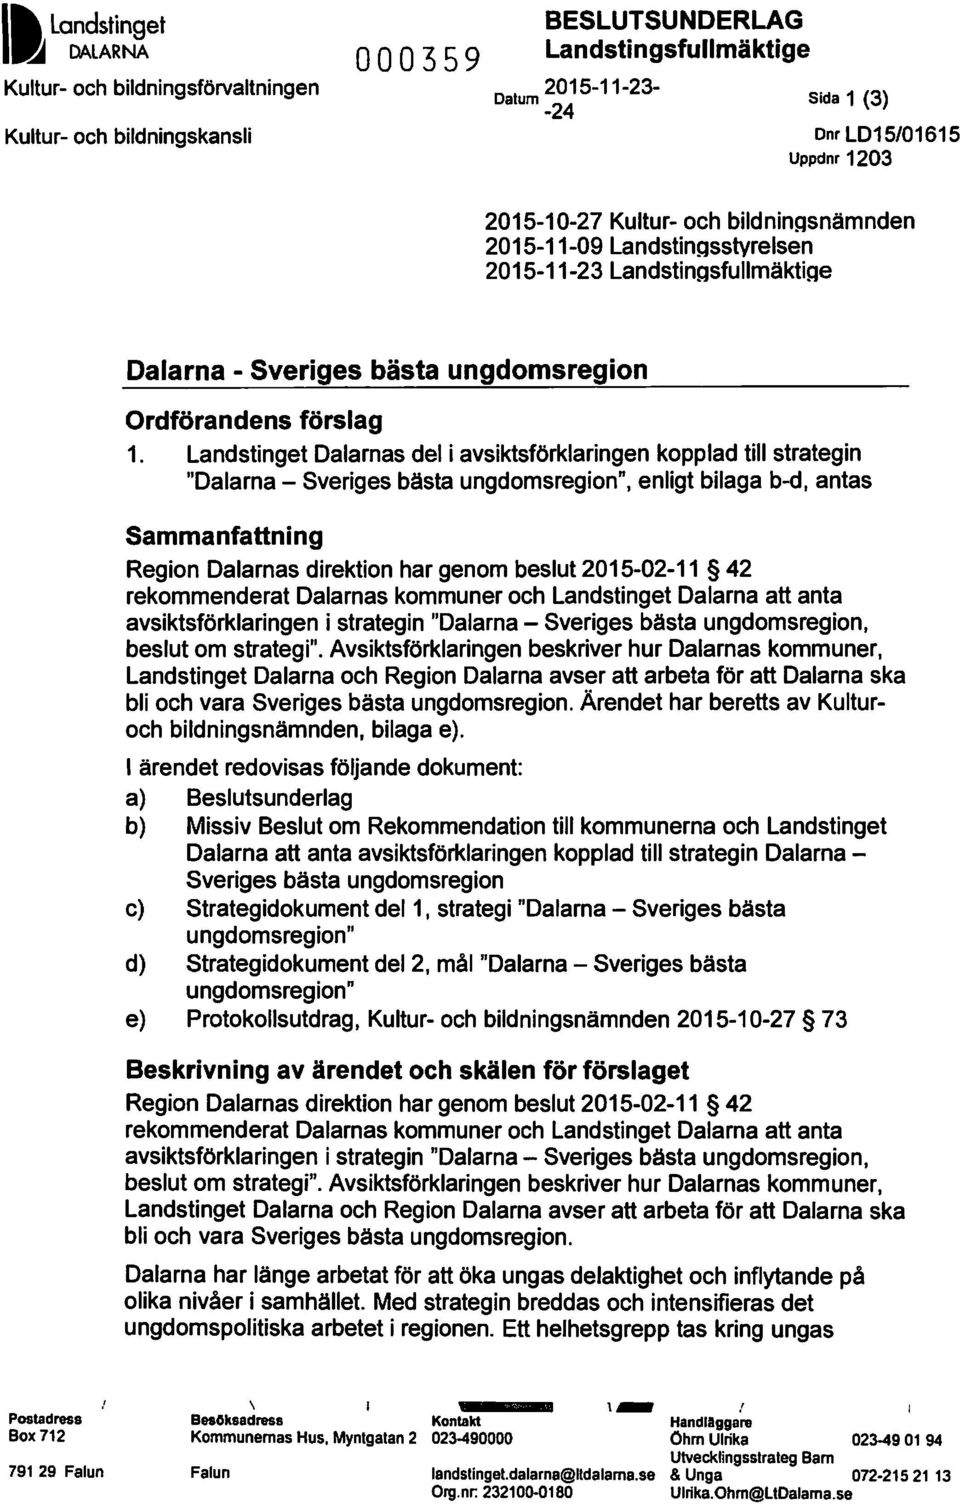 Landstinget Dalarnas del i avsiktsförklaringen kopplad till strategin "Dalarna - Sveriges bästa ungdomsregion", enligt bilaga b-d, antas Sammanfattning Region Dalarnas direktion har genom beslut